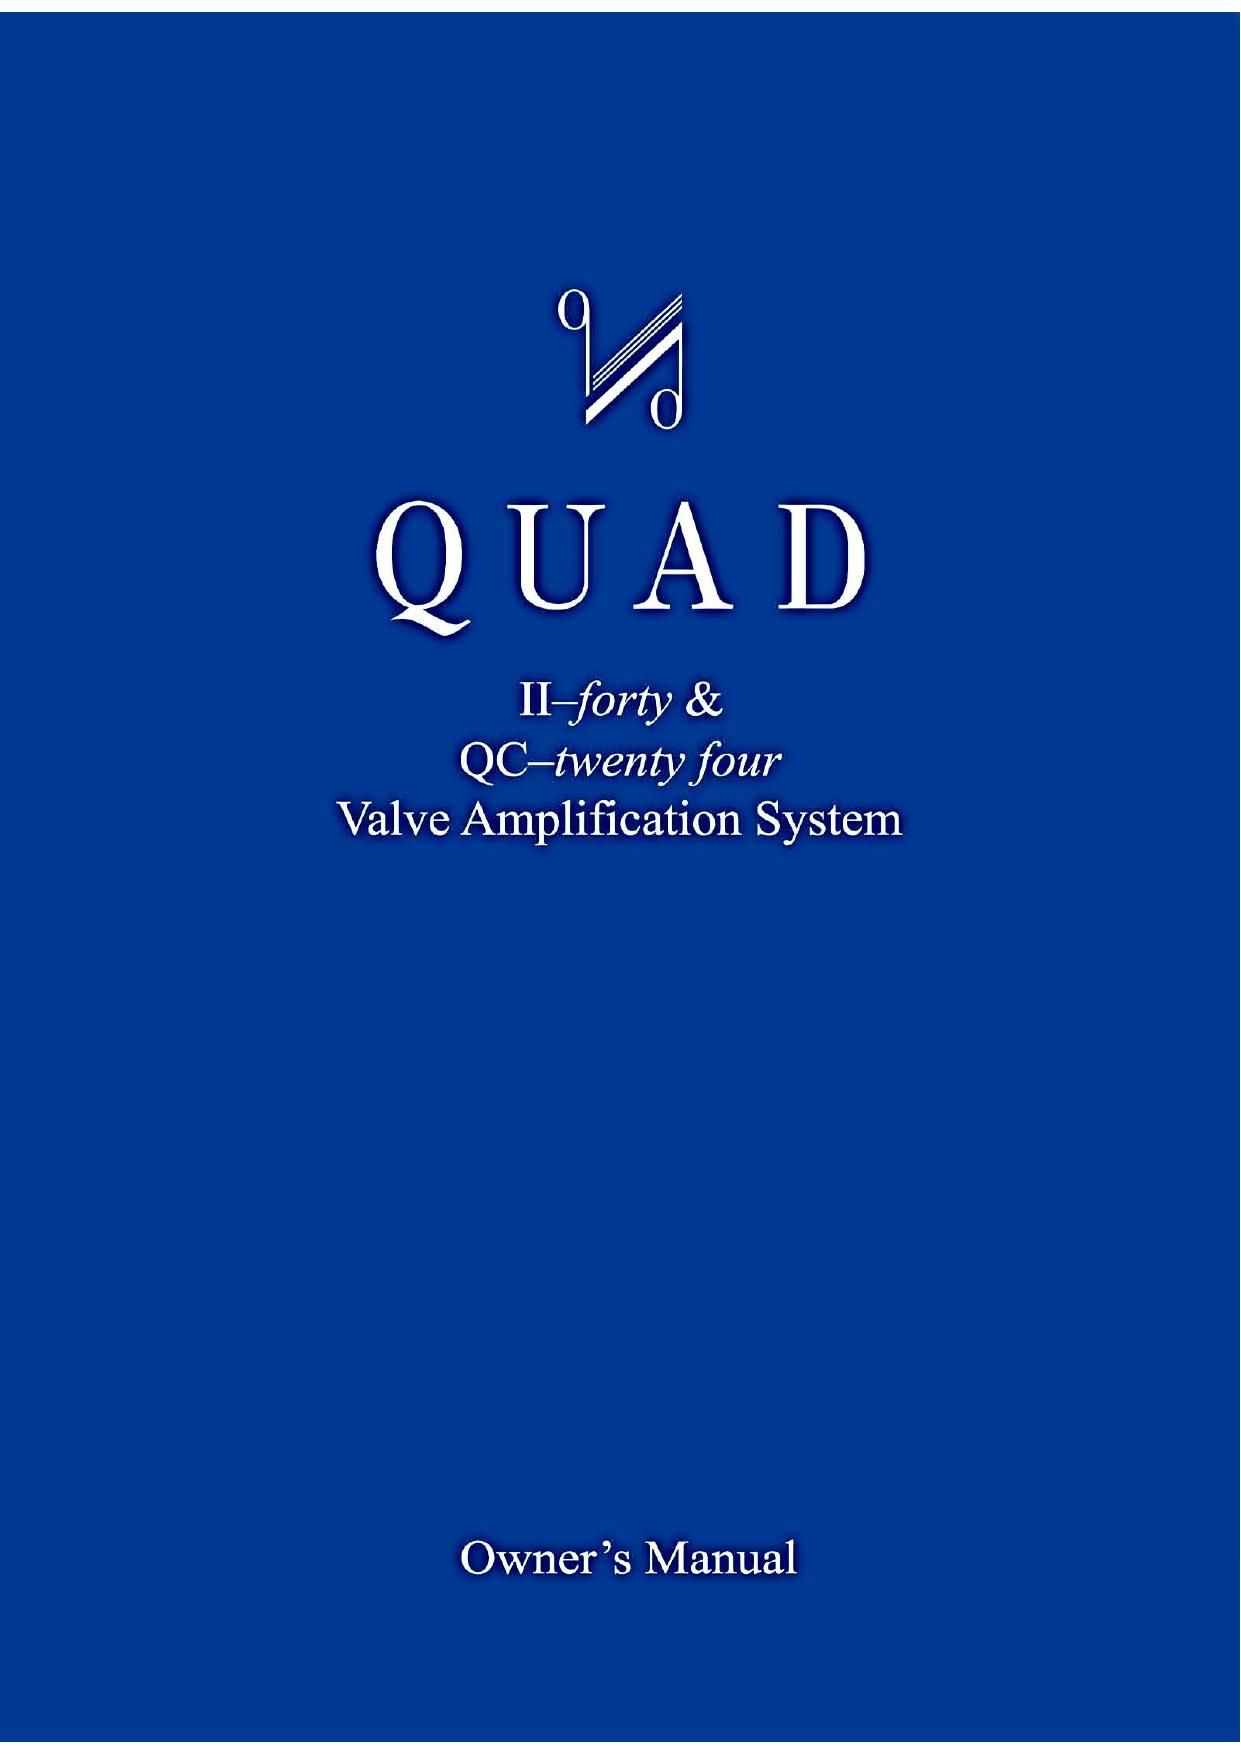 Quad QC Twenty Four Owners Manual